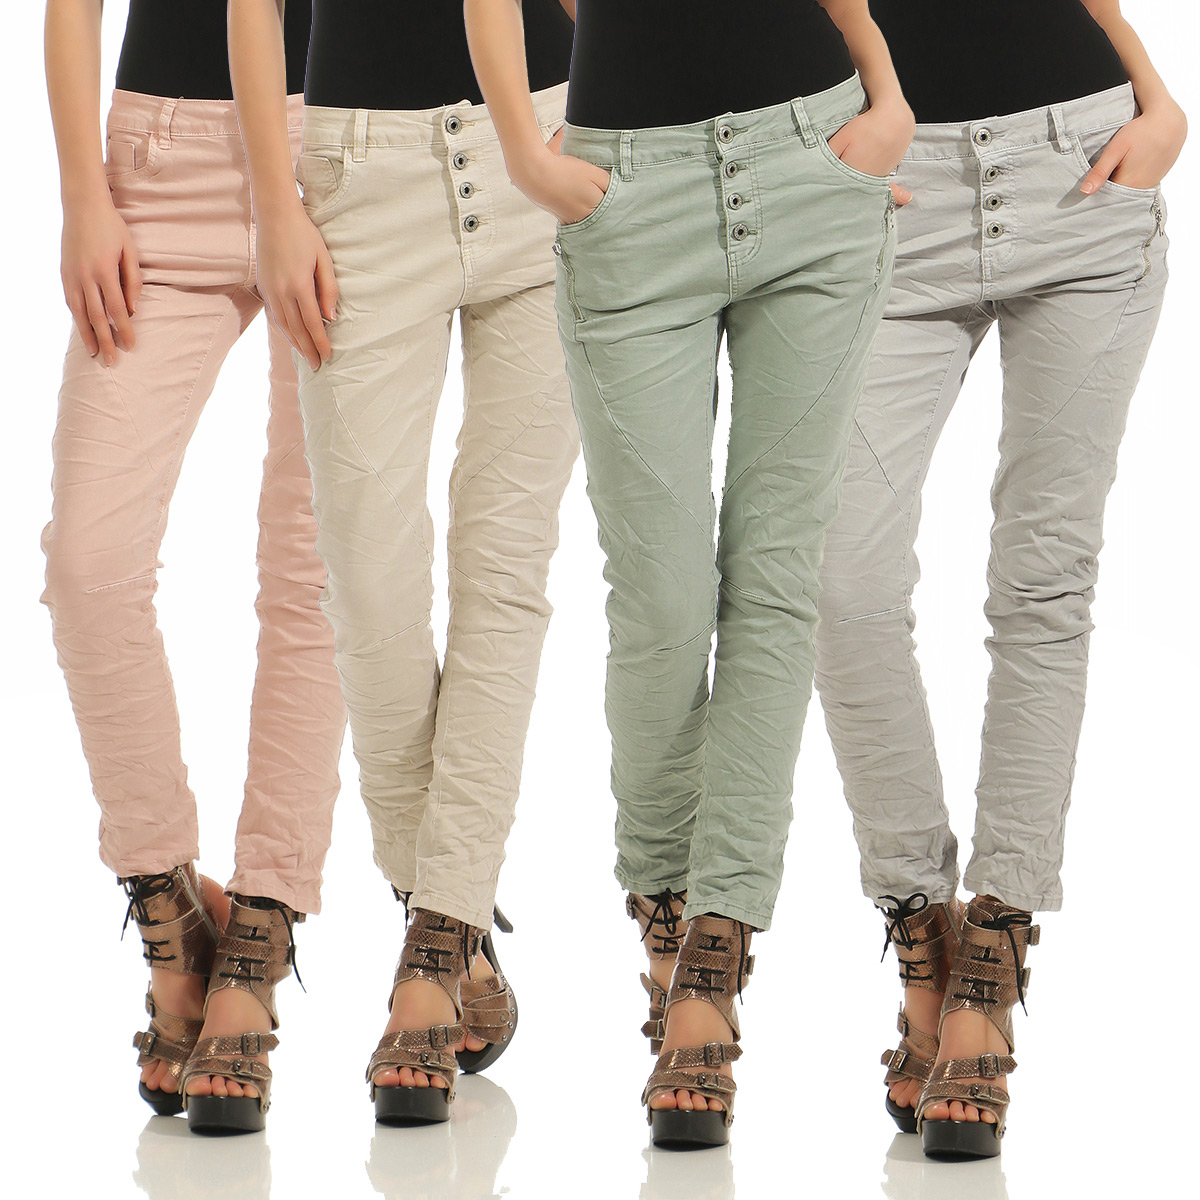 lexxury jeans online shop